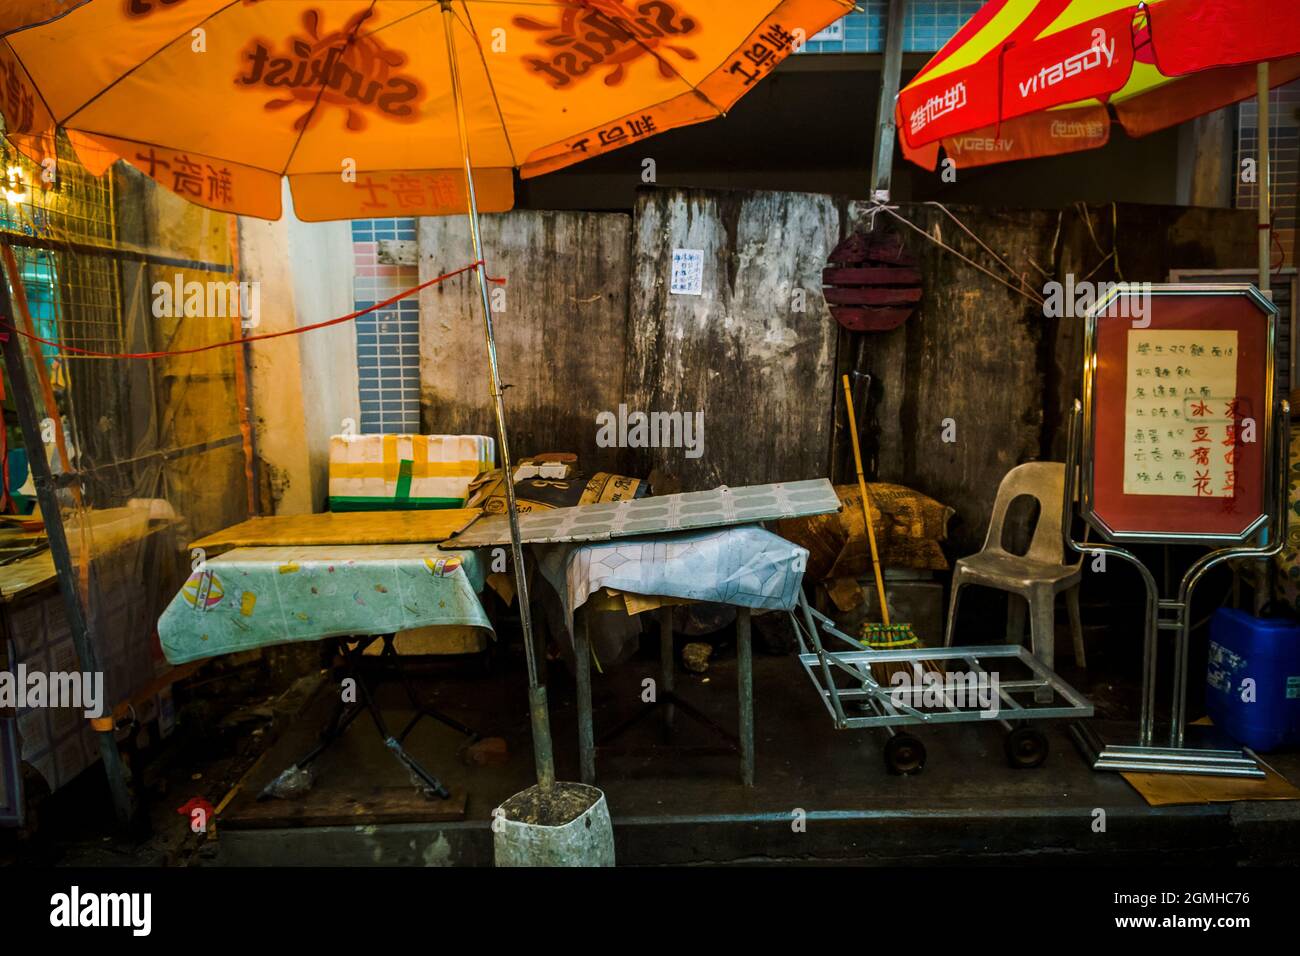 Escena callejera fuera de un restaurante: Mesas de repuesto, sombrillas y un cartel, en Tai O, Isla Lantau, Hong Kong Foto de stock